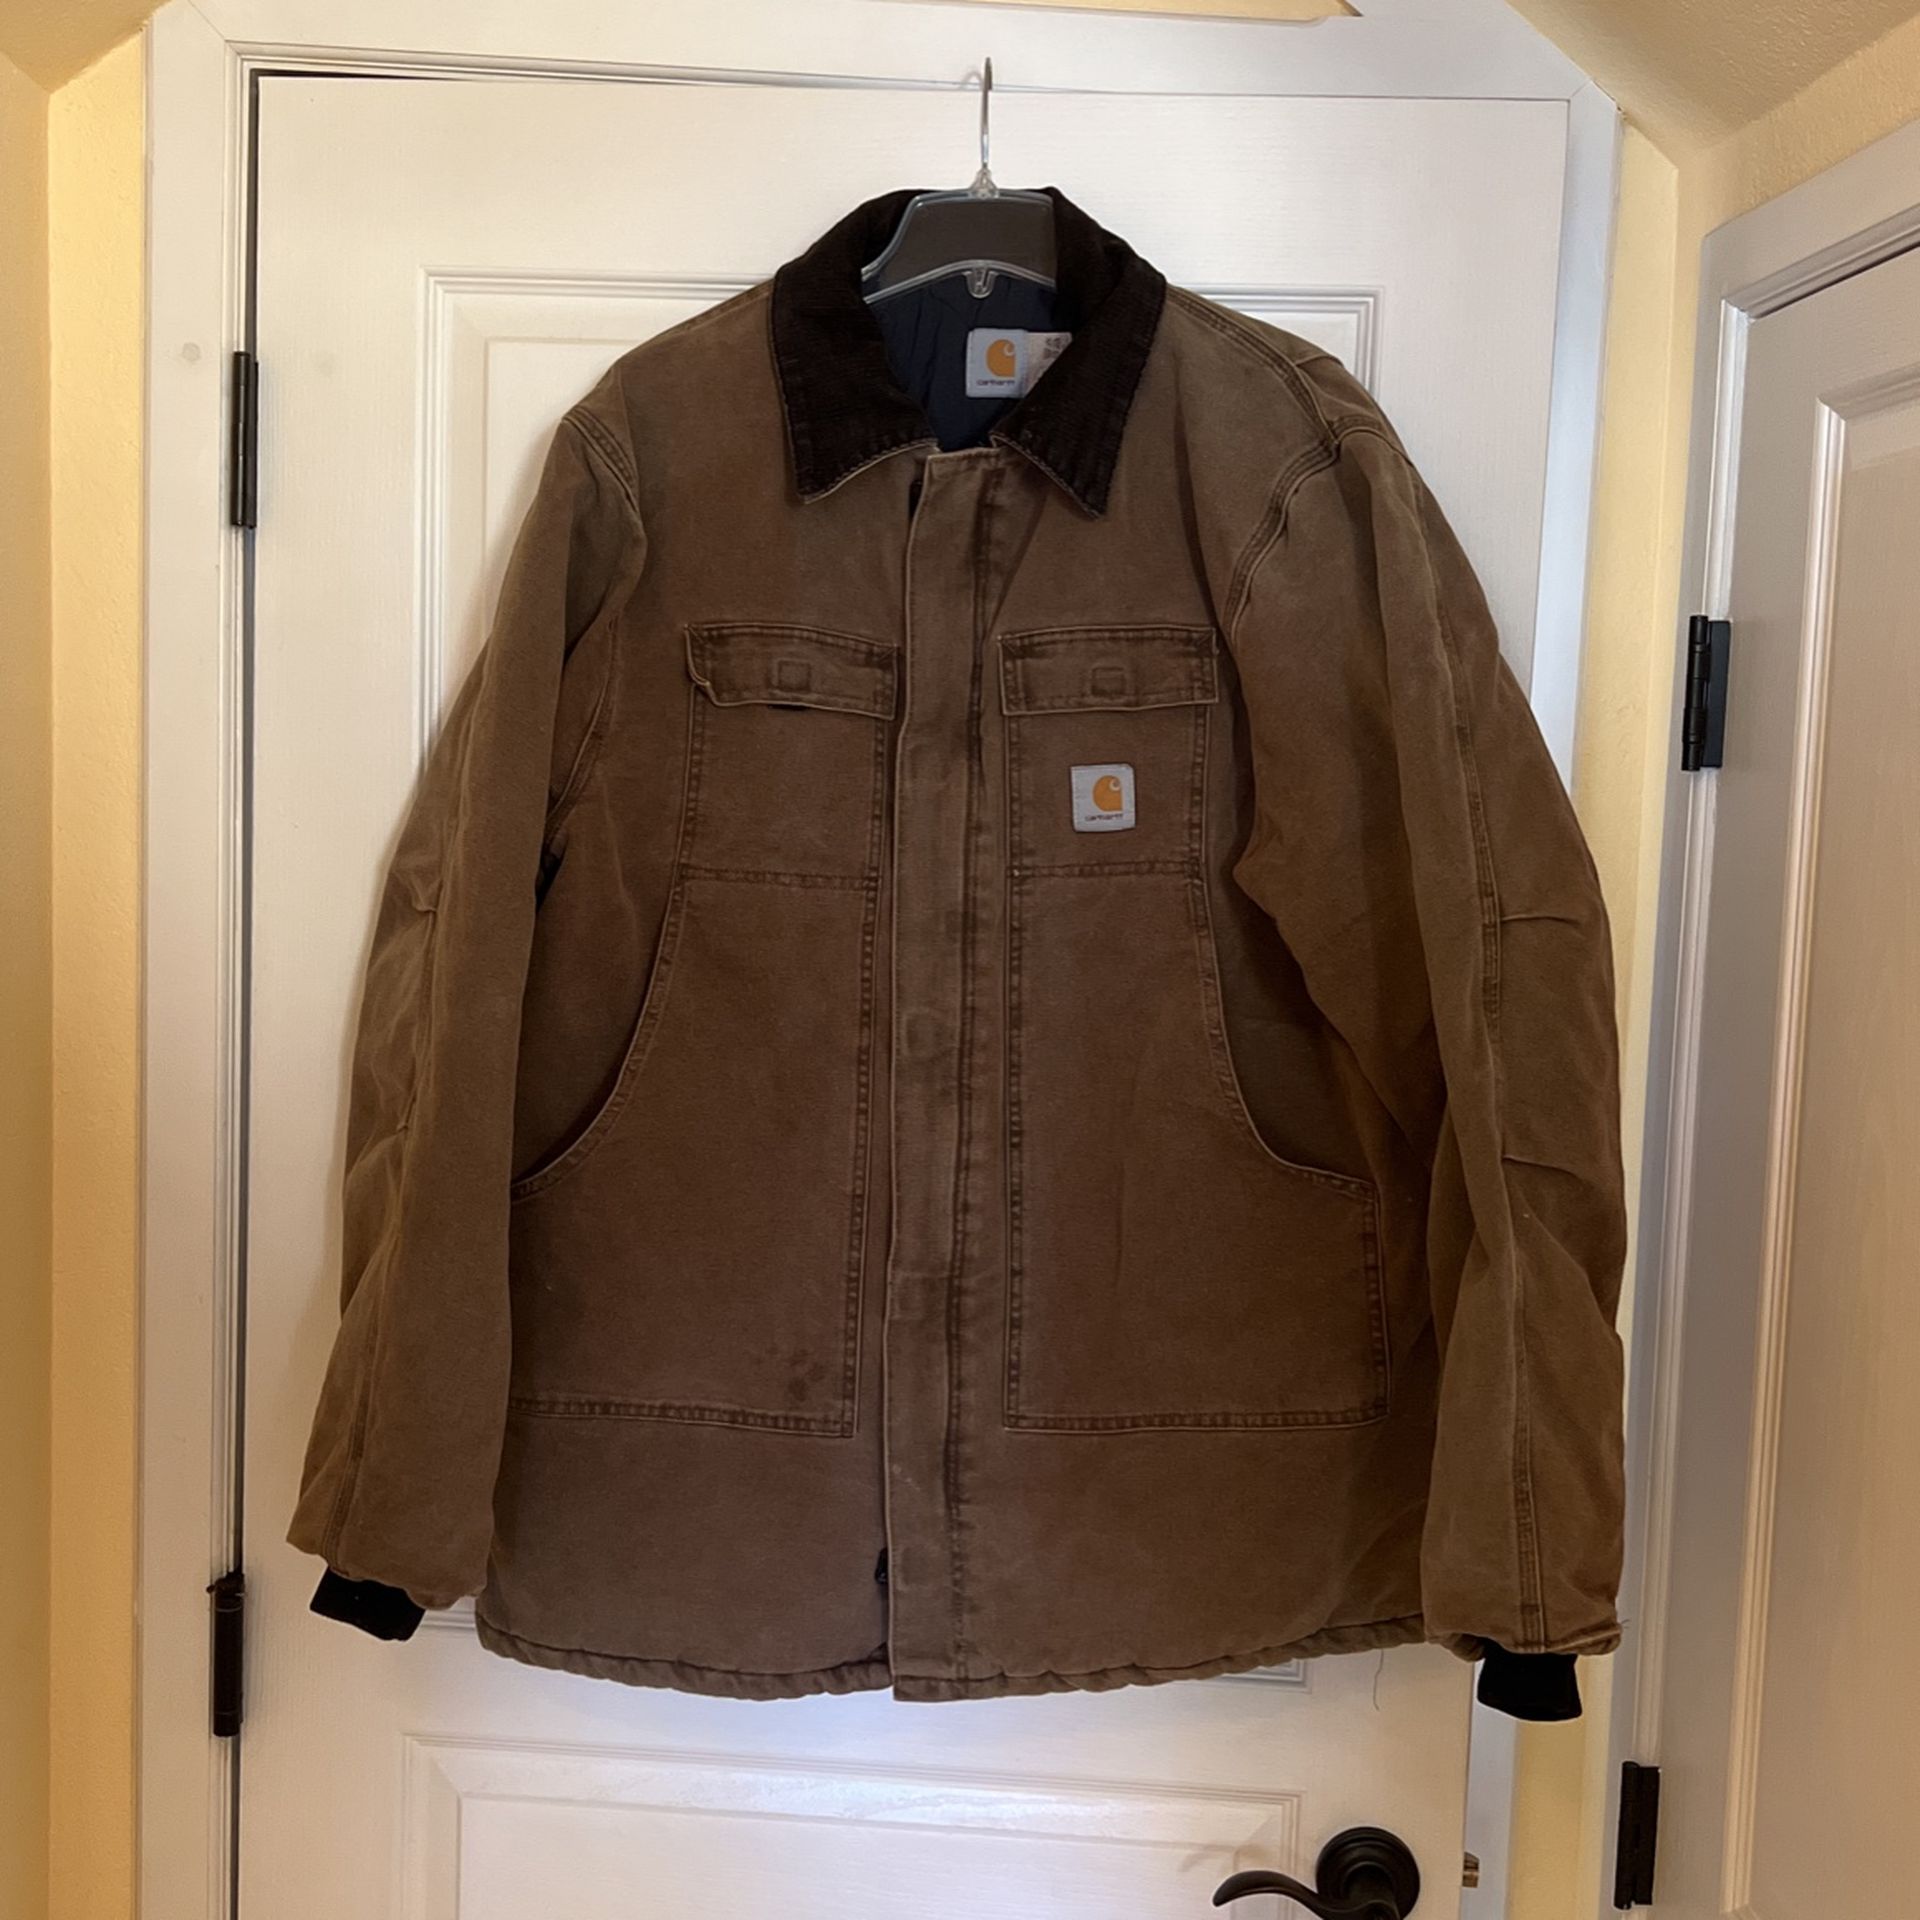 Carrhart jacket - XL